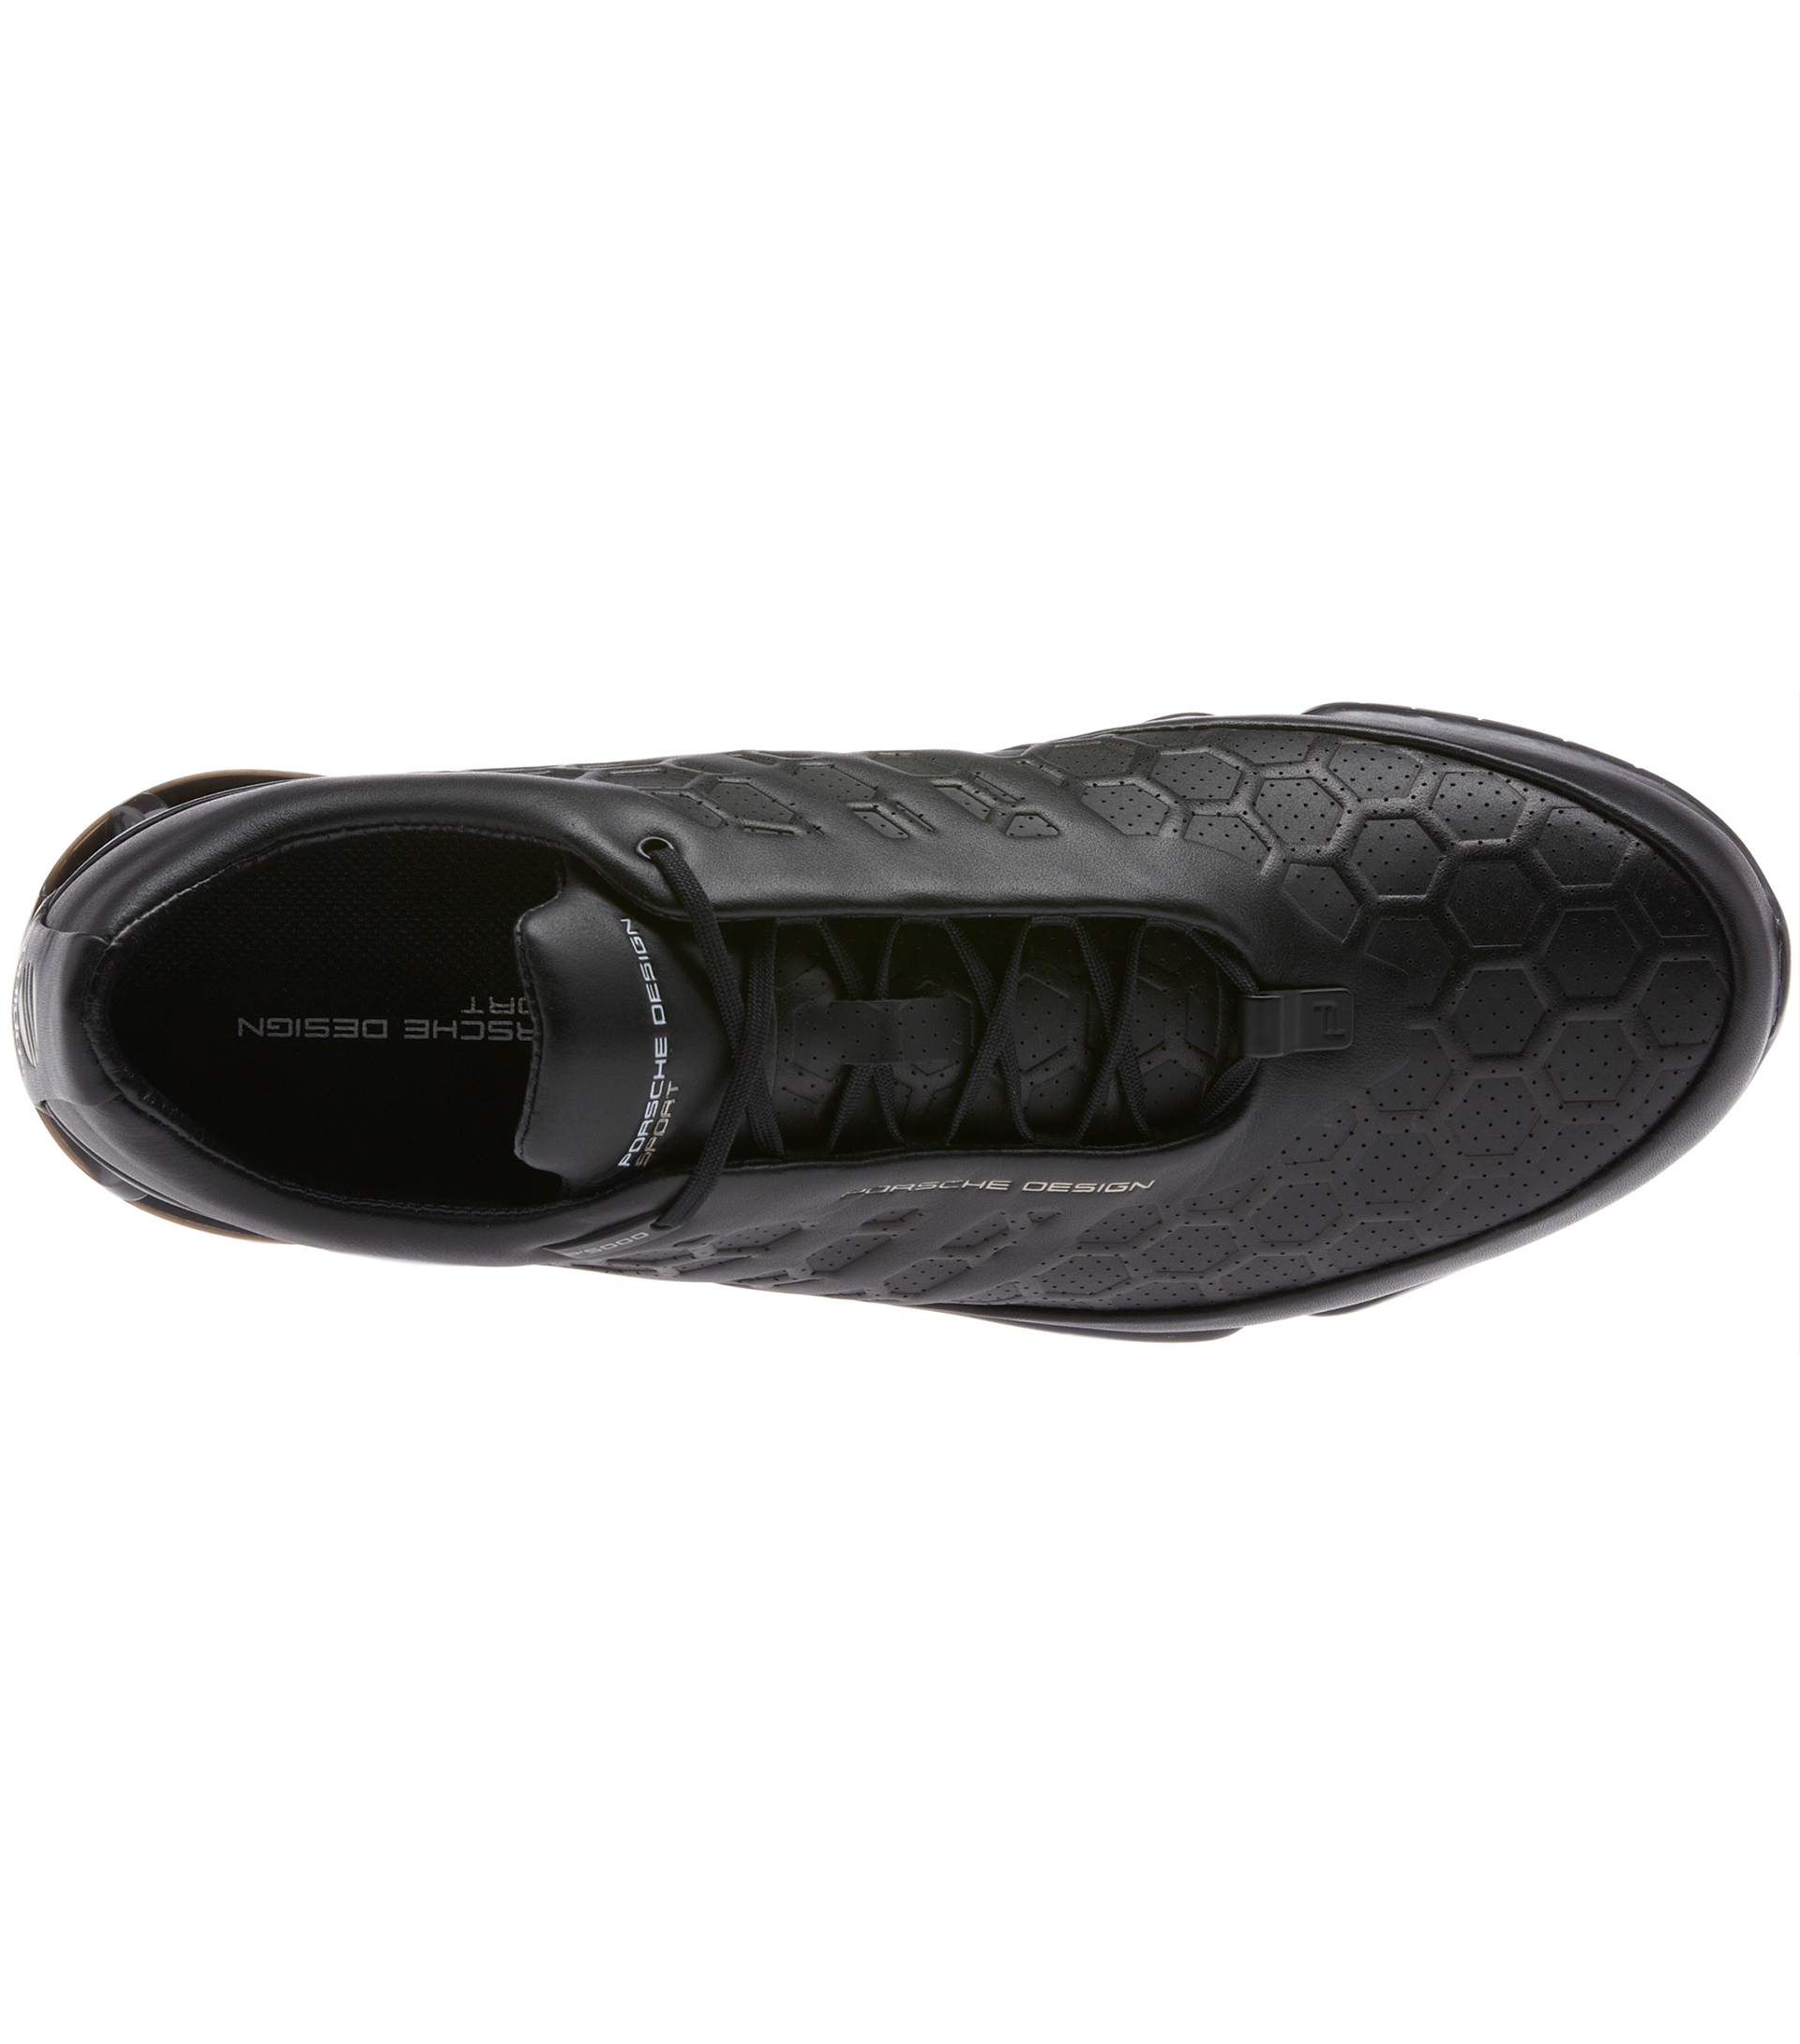 adidas tubular bounce leather shoe